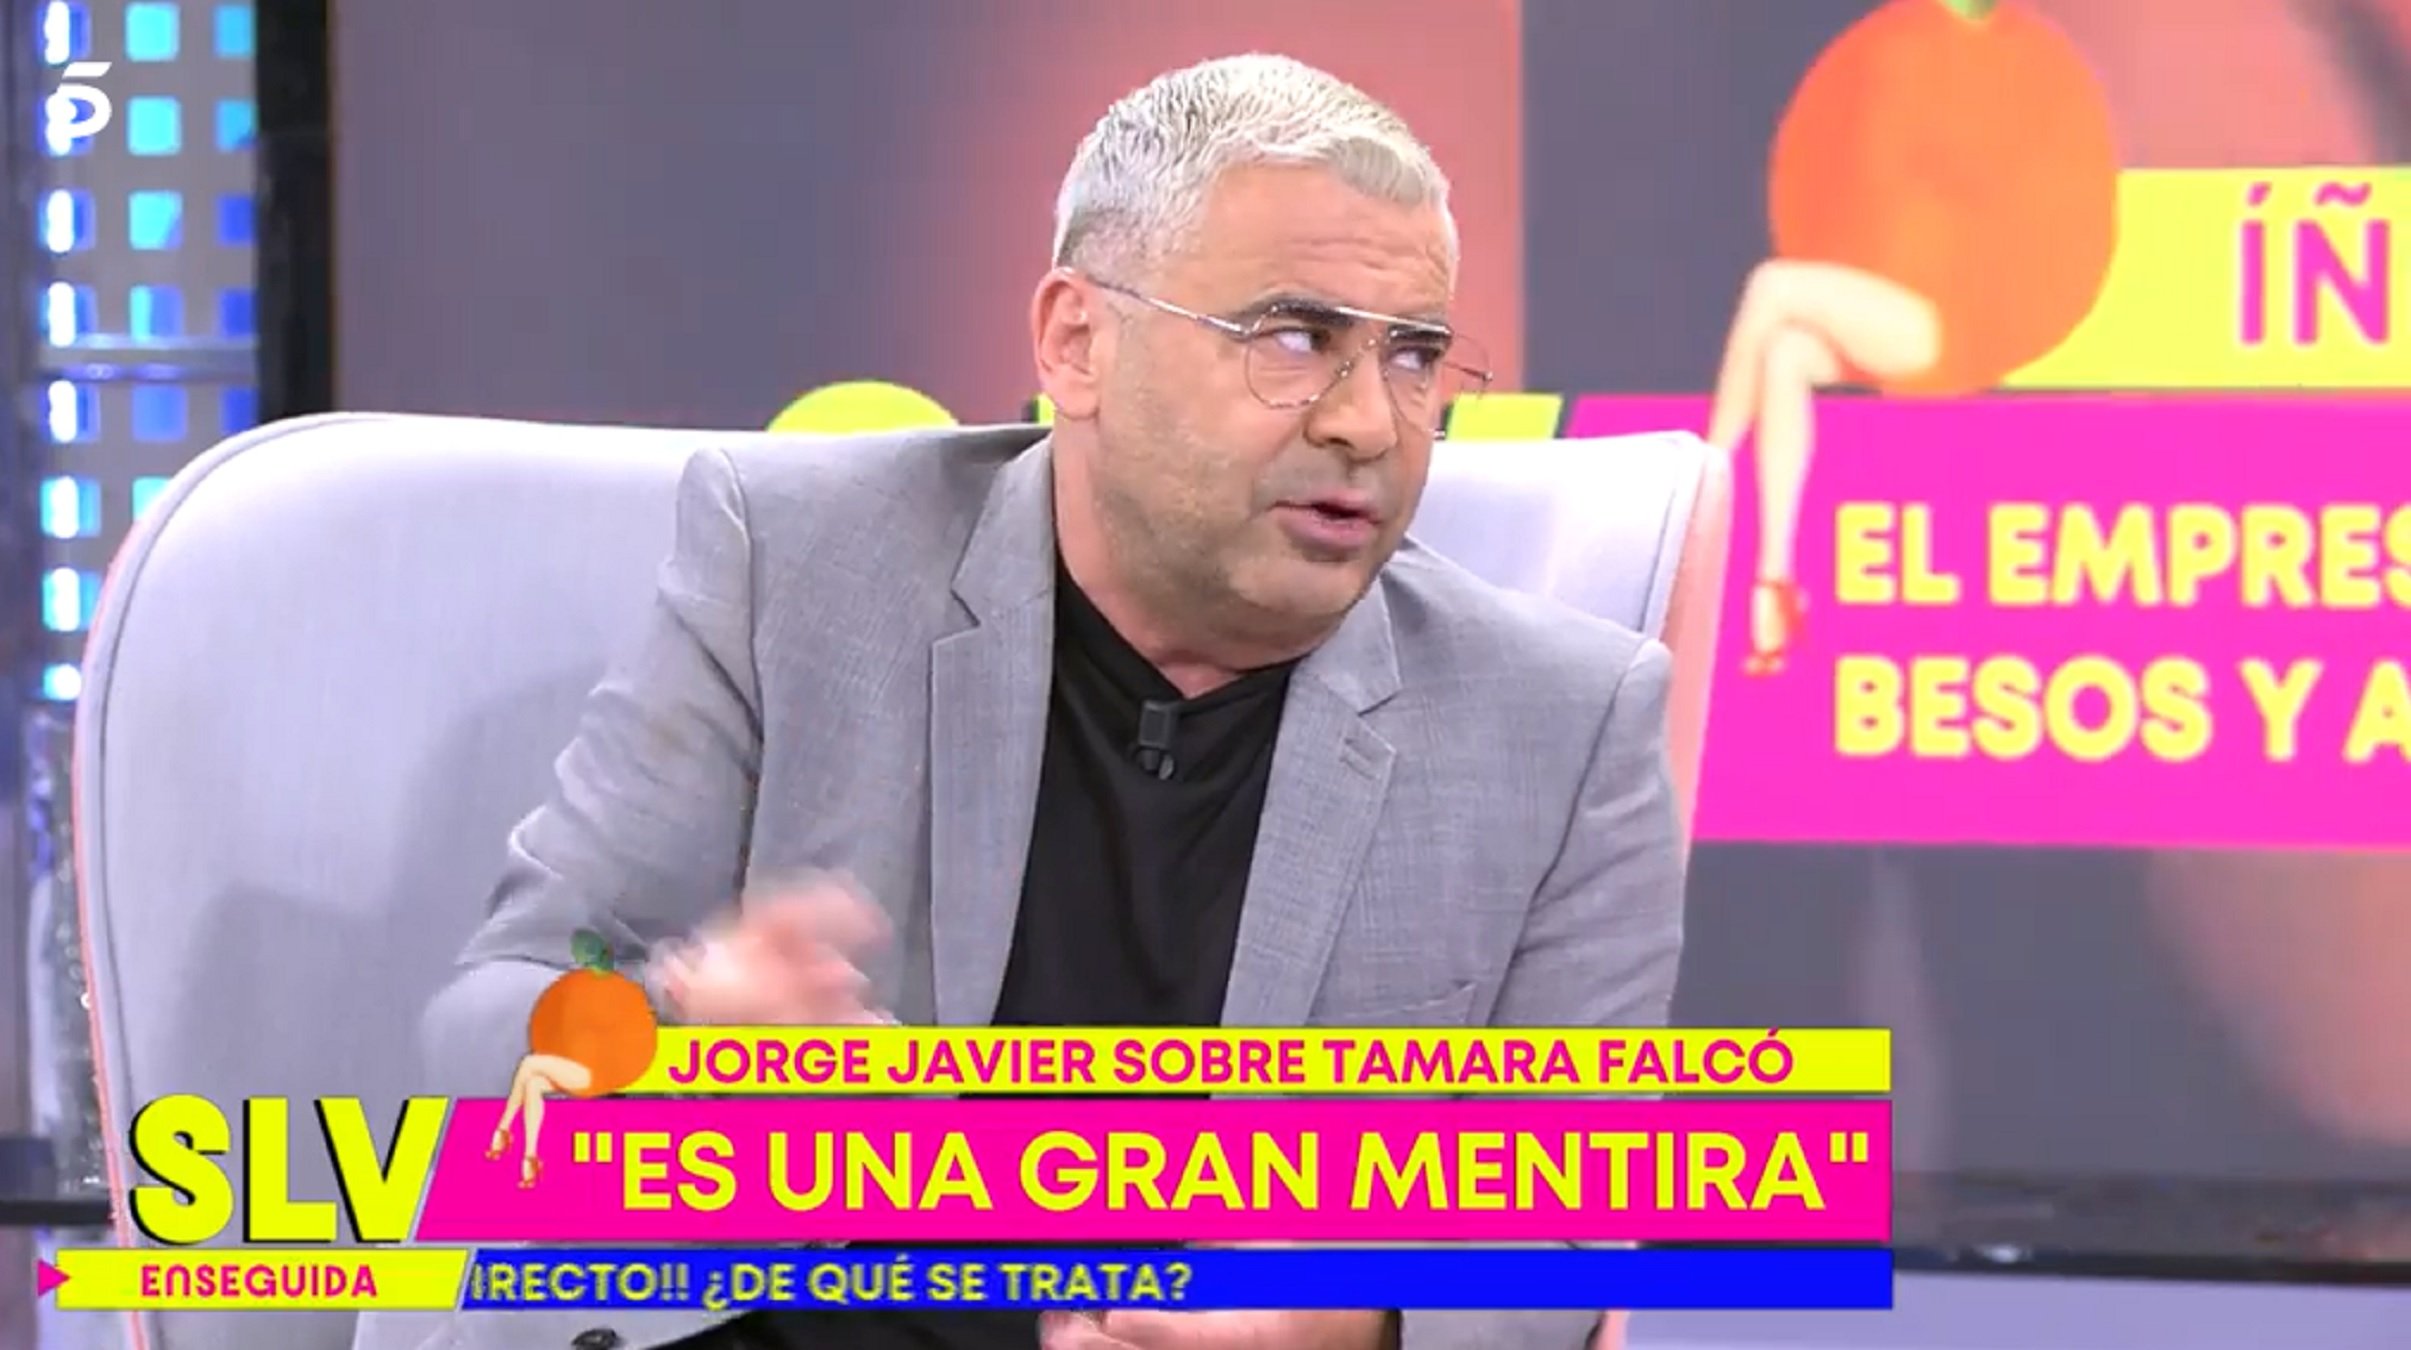 Jorge Javier pone a Tamara Falcó de vuelta y media: declaraciones durísimas